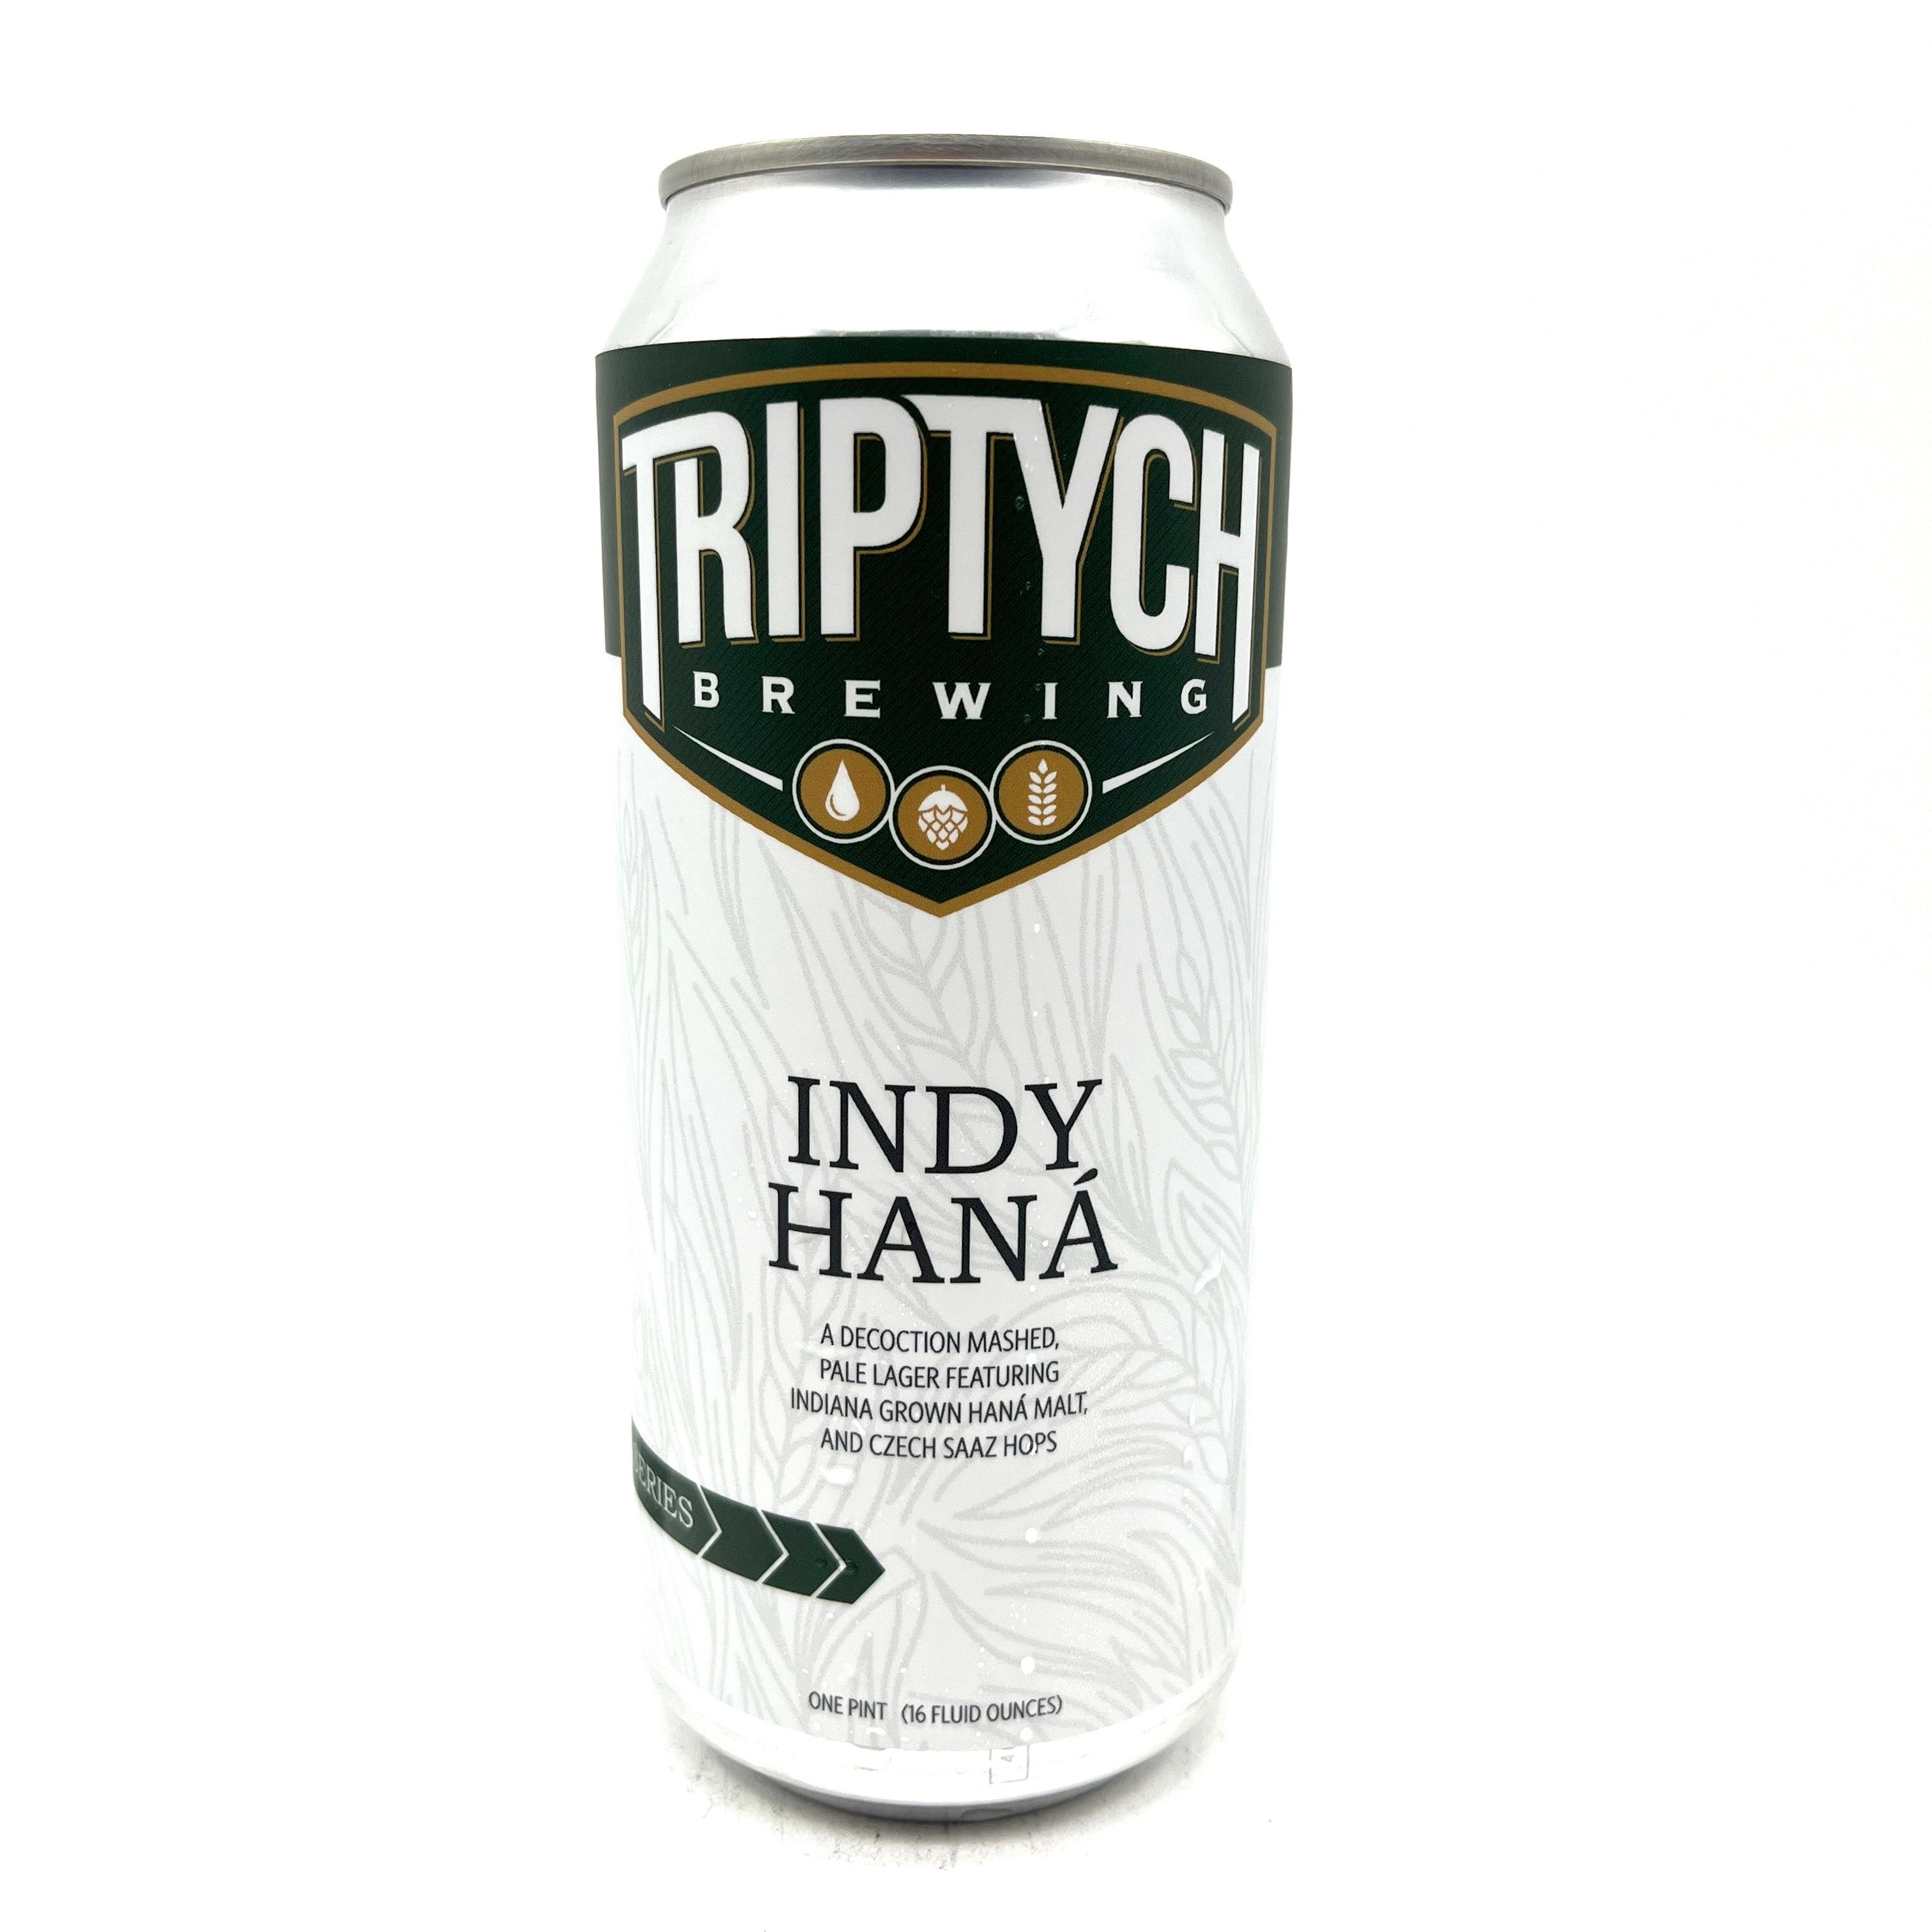 Triptych - Indy Haná